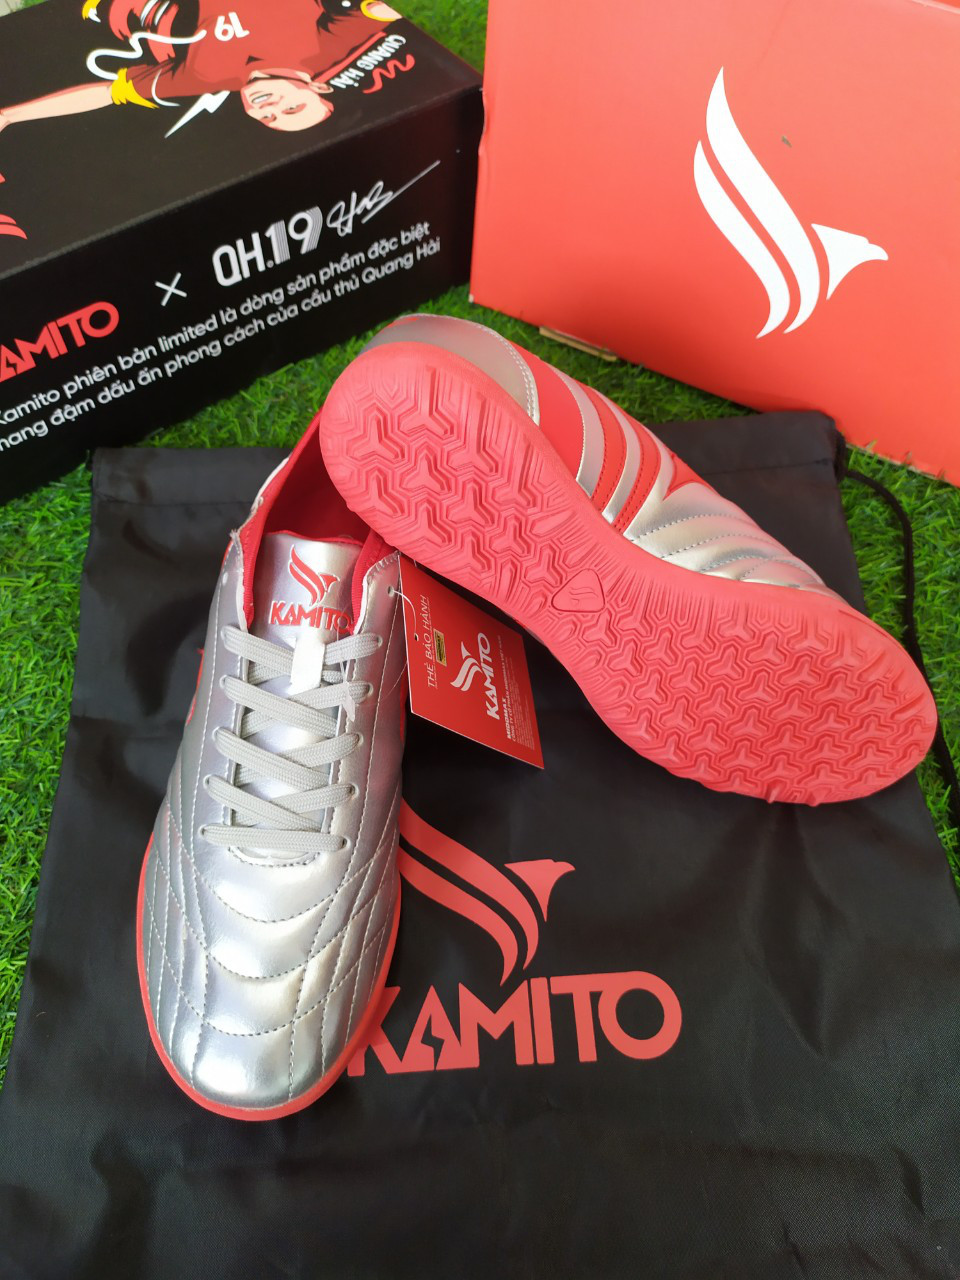 Giày Kamito Espada 2019 bạc đỏ